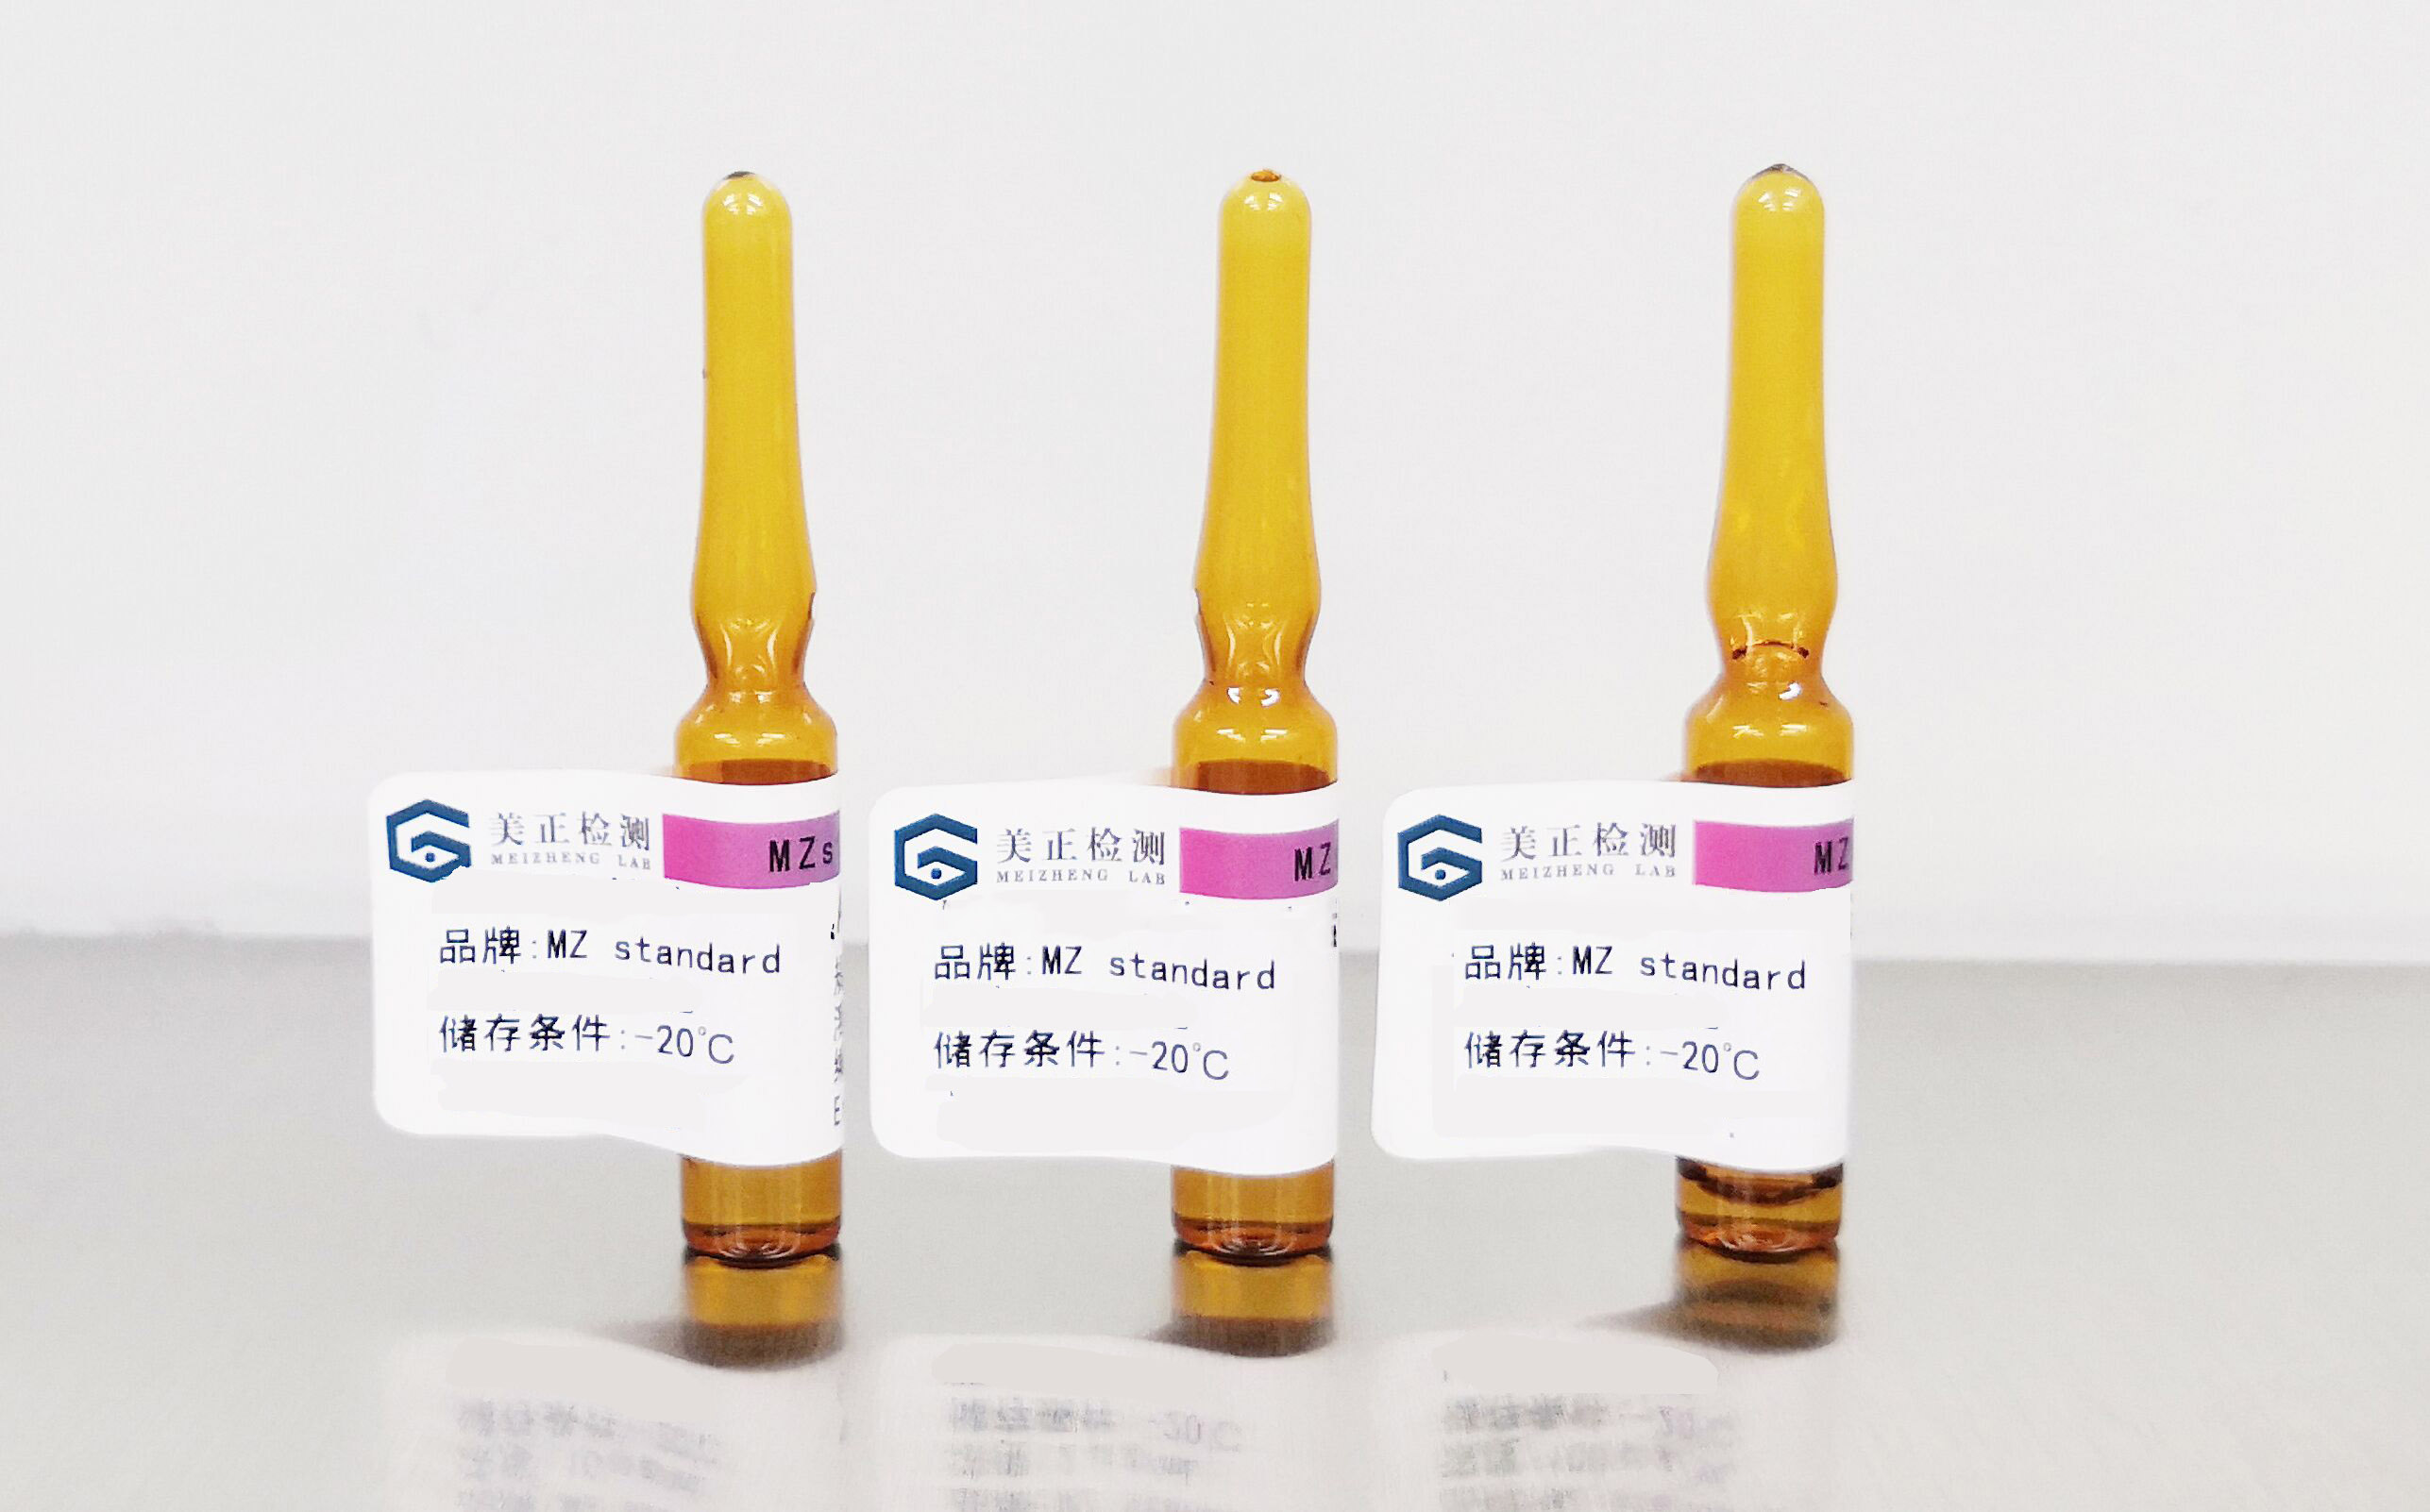 甲醇中黄曲霉毒素G1标准溶液